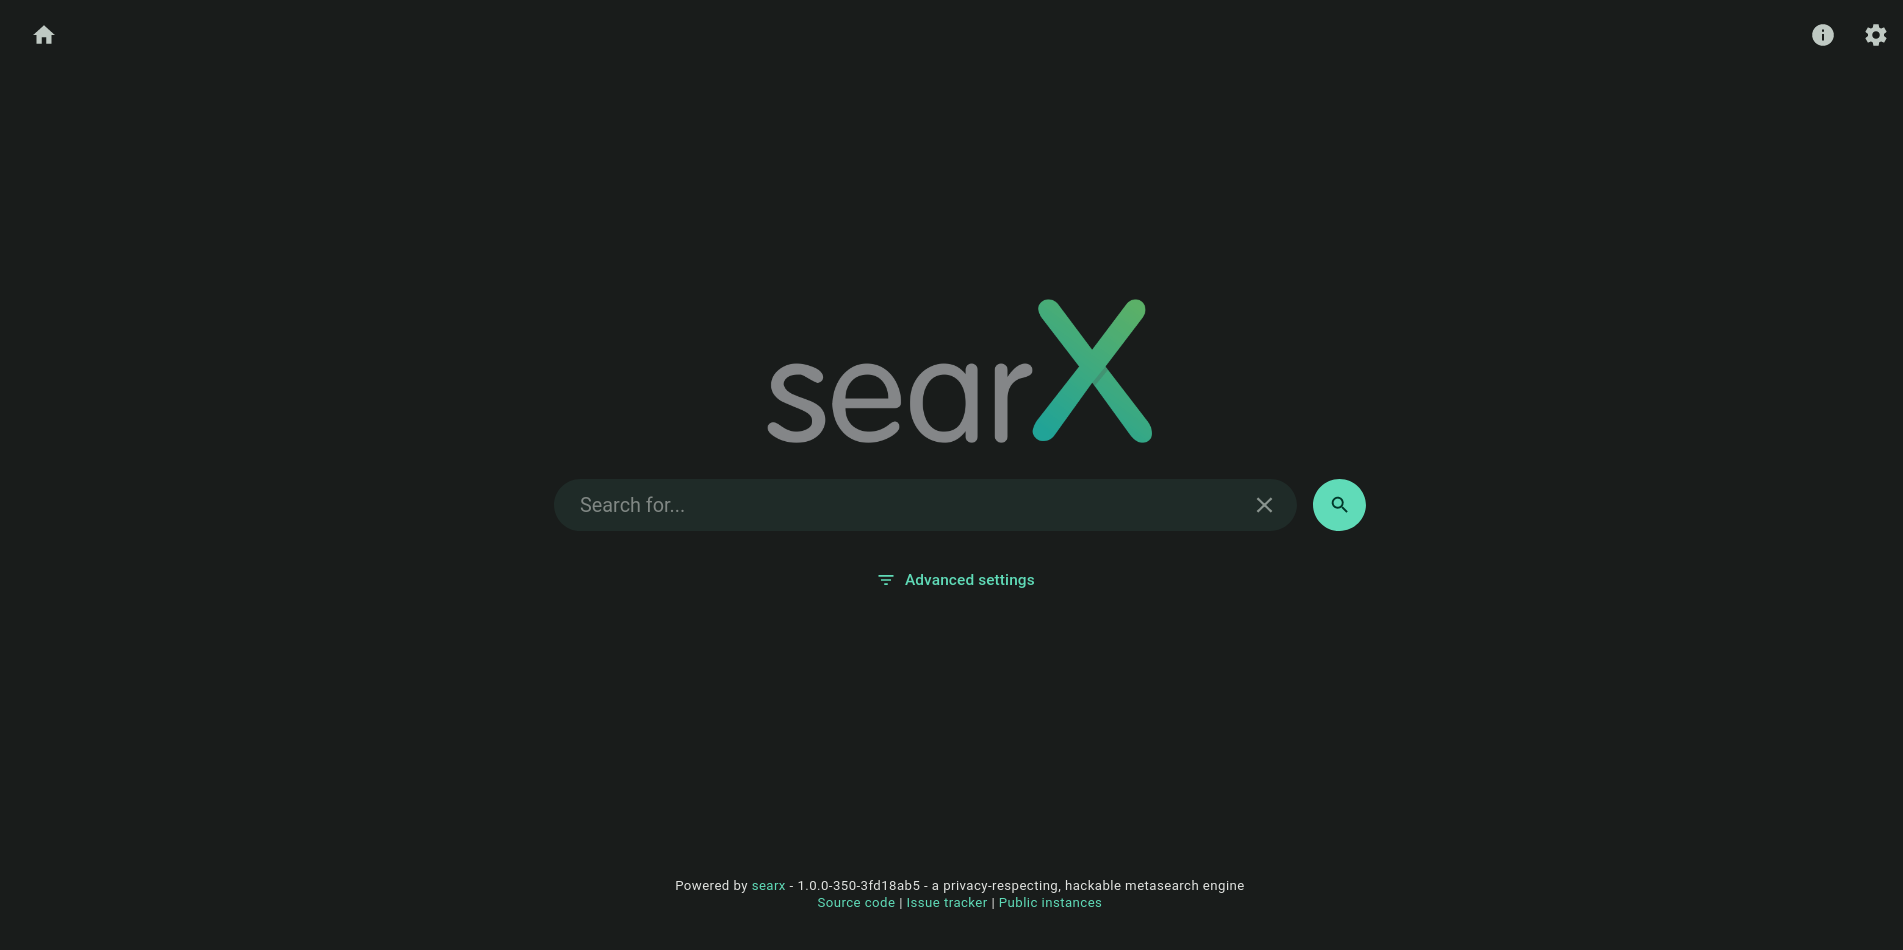 searx home - material dark